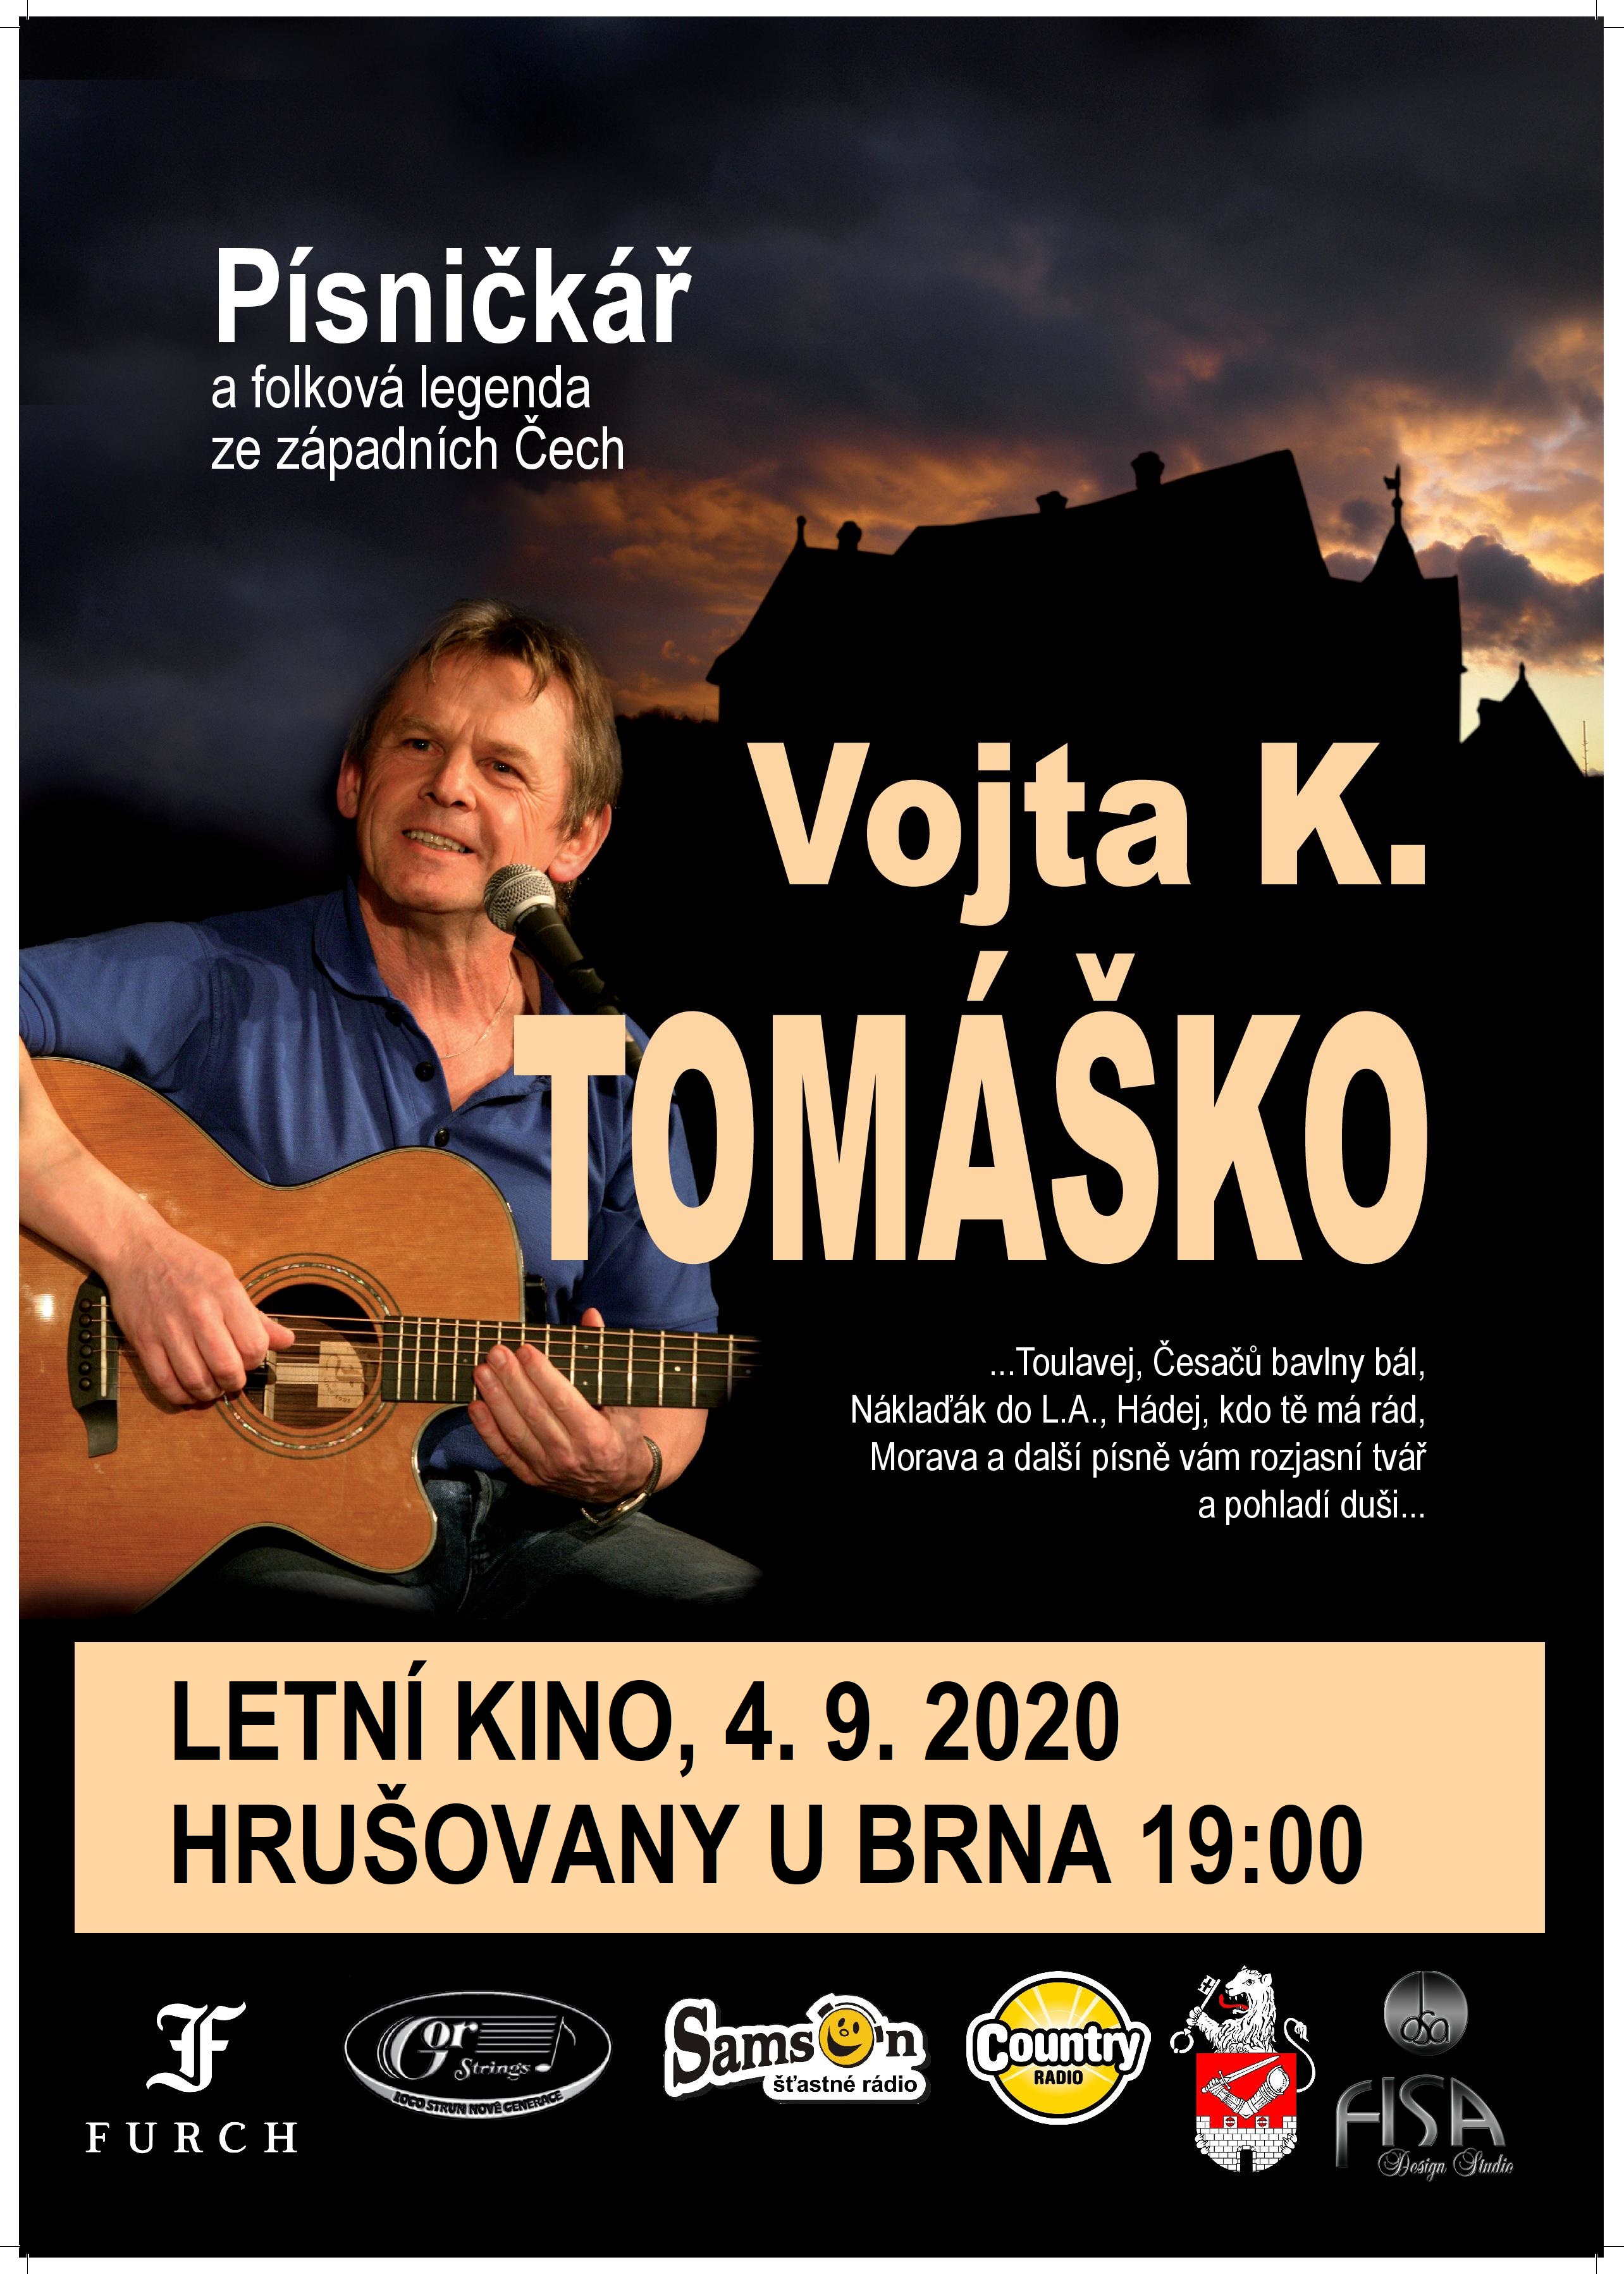 Pozvánka na koncert Vojty K. Tomáška dne 4. 9. 2020 v letním kině v Hrušovanech u Brna od 19:00